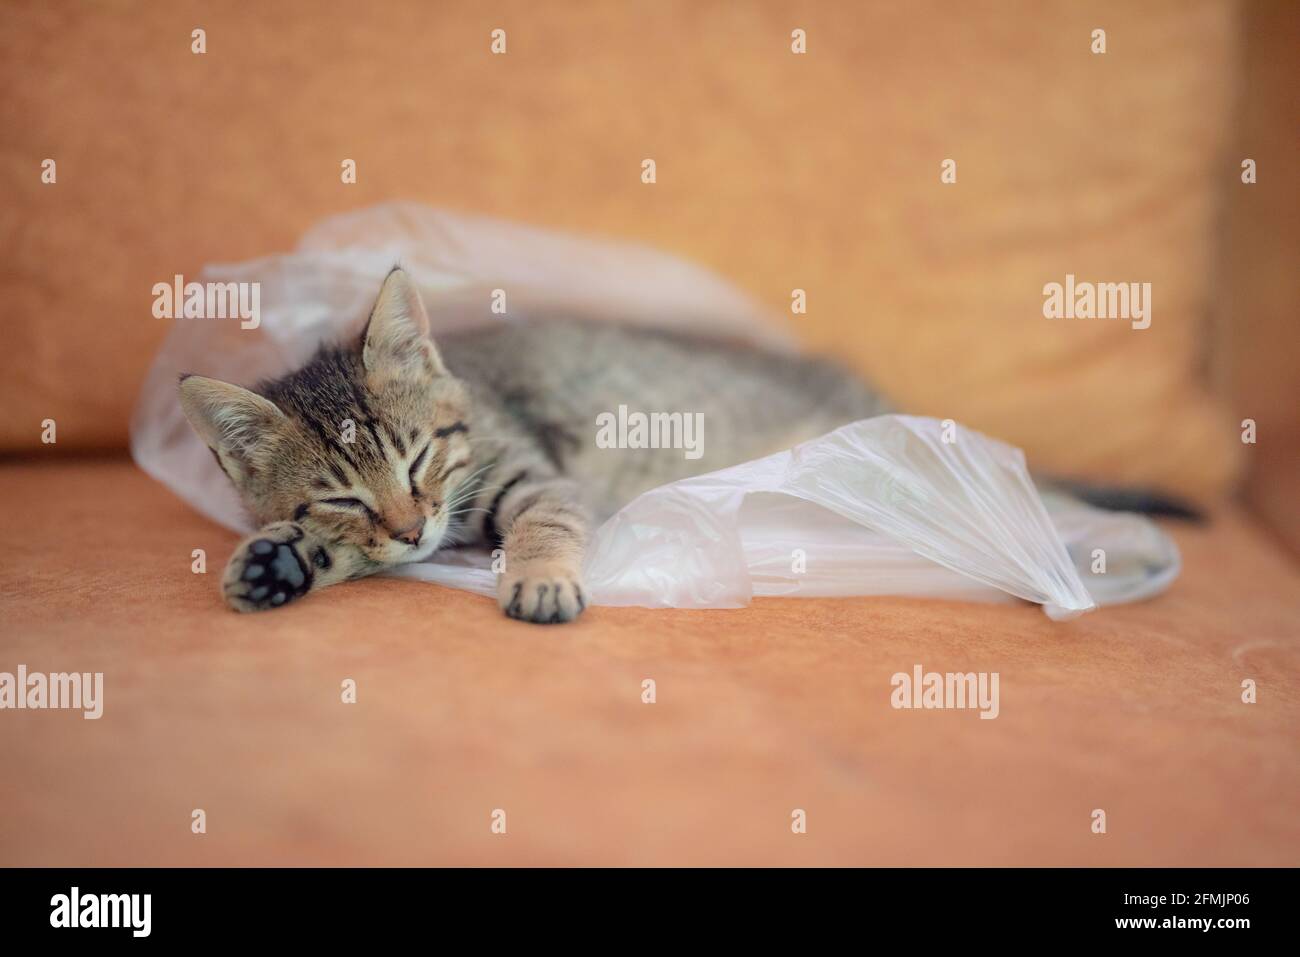 Tabby kitten sleeping inside plastic bag Stock Photo